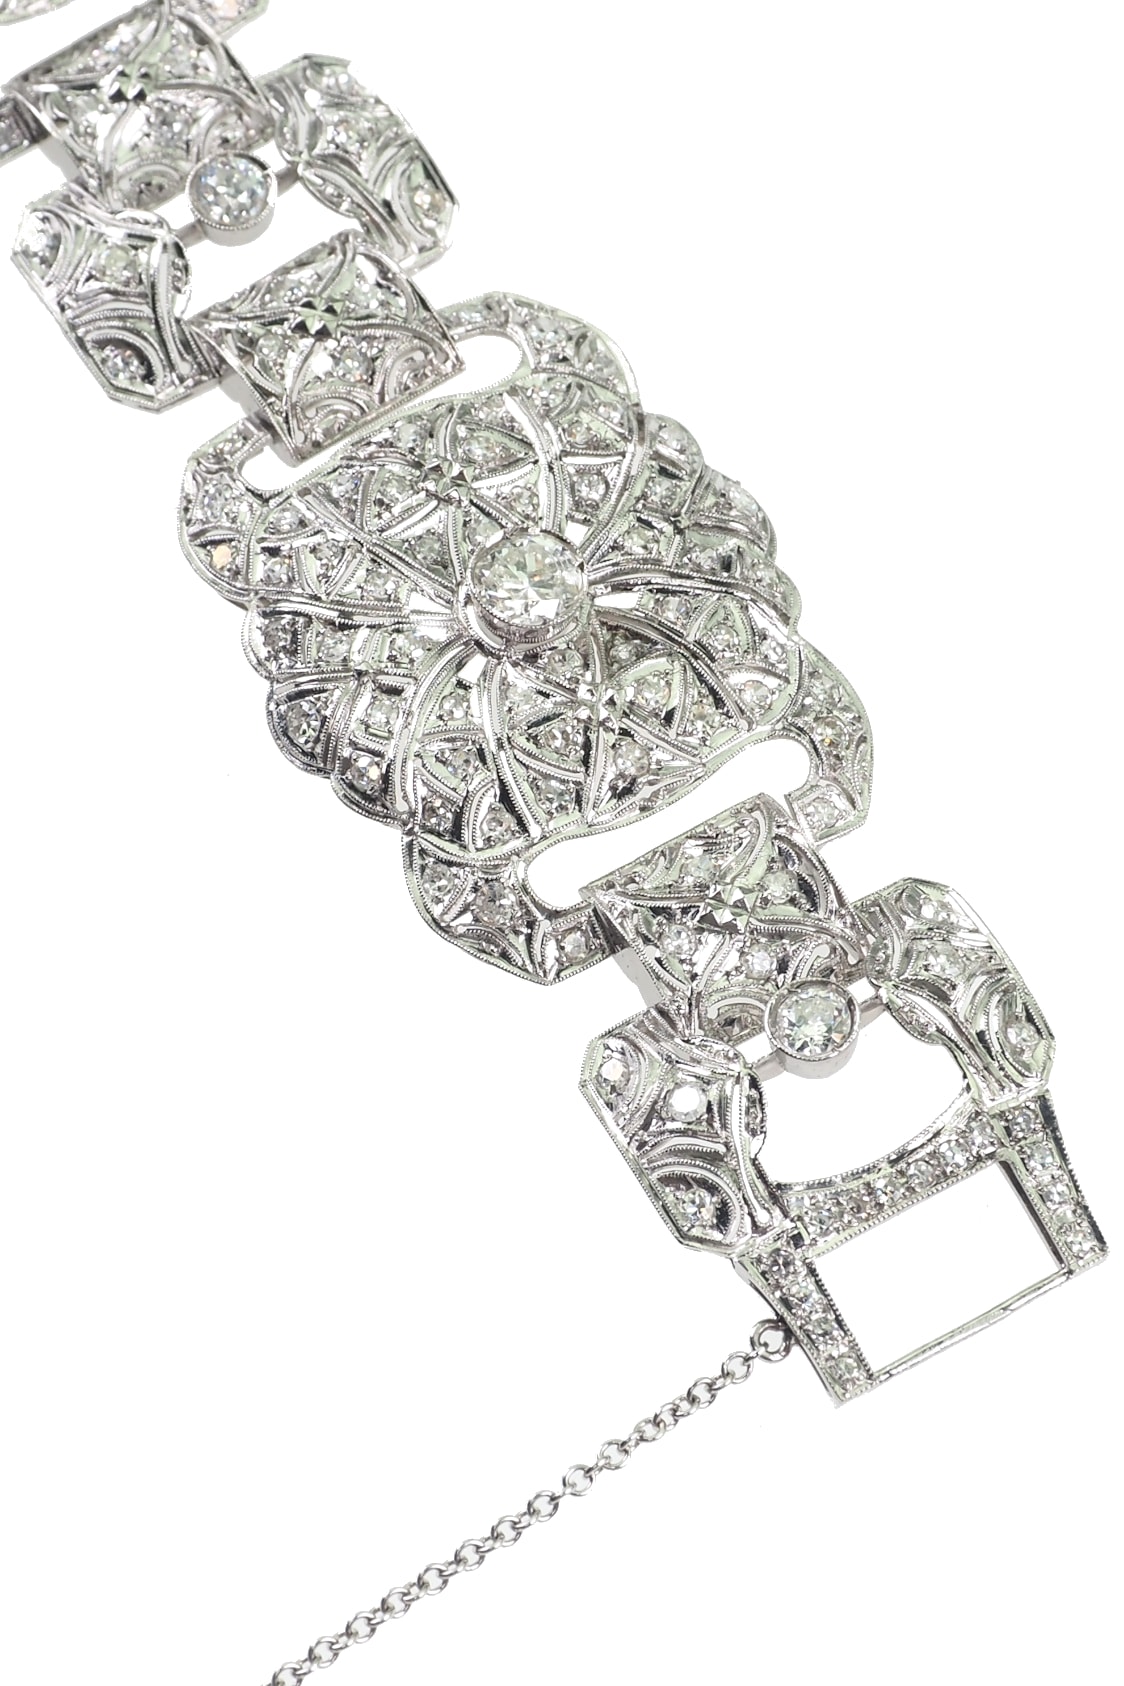 luxurious-antique-jewellery-2607c